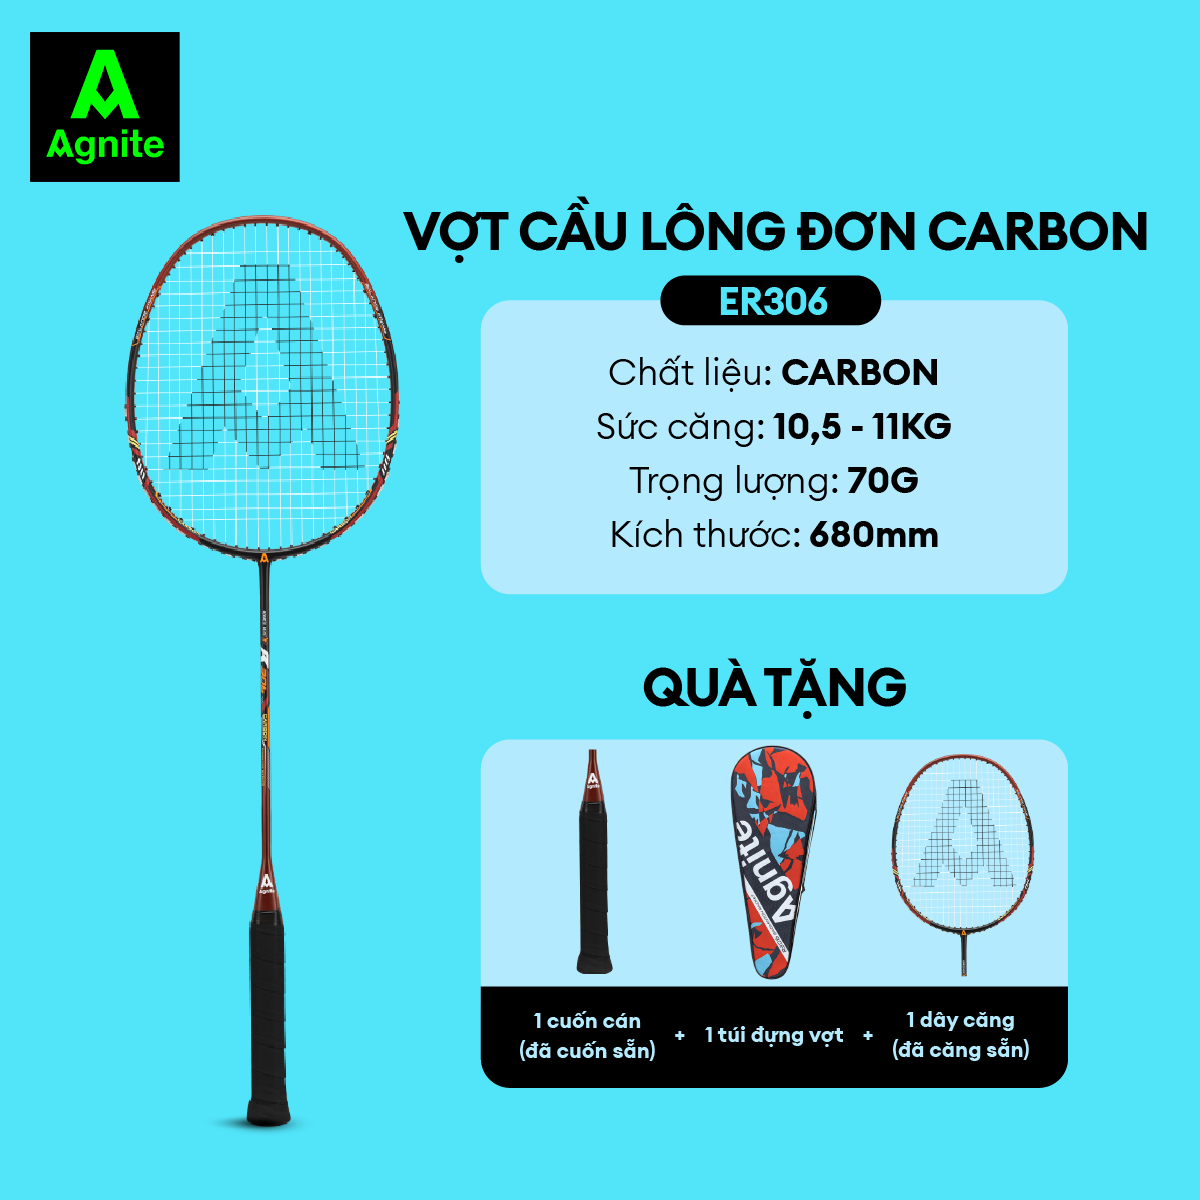 Vợt cầu lông 100% carbon Agnite chính hãng, vợt đơn căng sẵn 11kg, siêu nhẹ, tặng kèm túi đựng vợt, quấn cán đã quấn sẵn